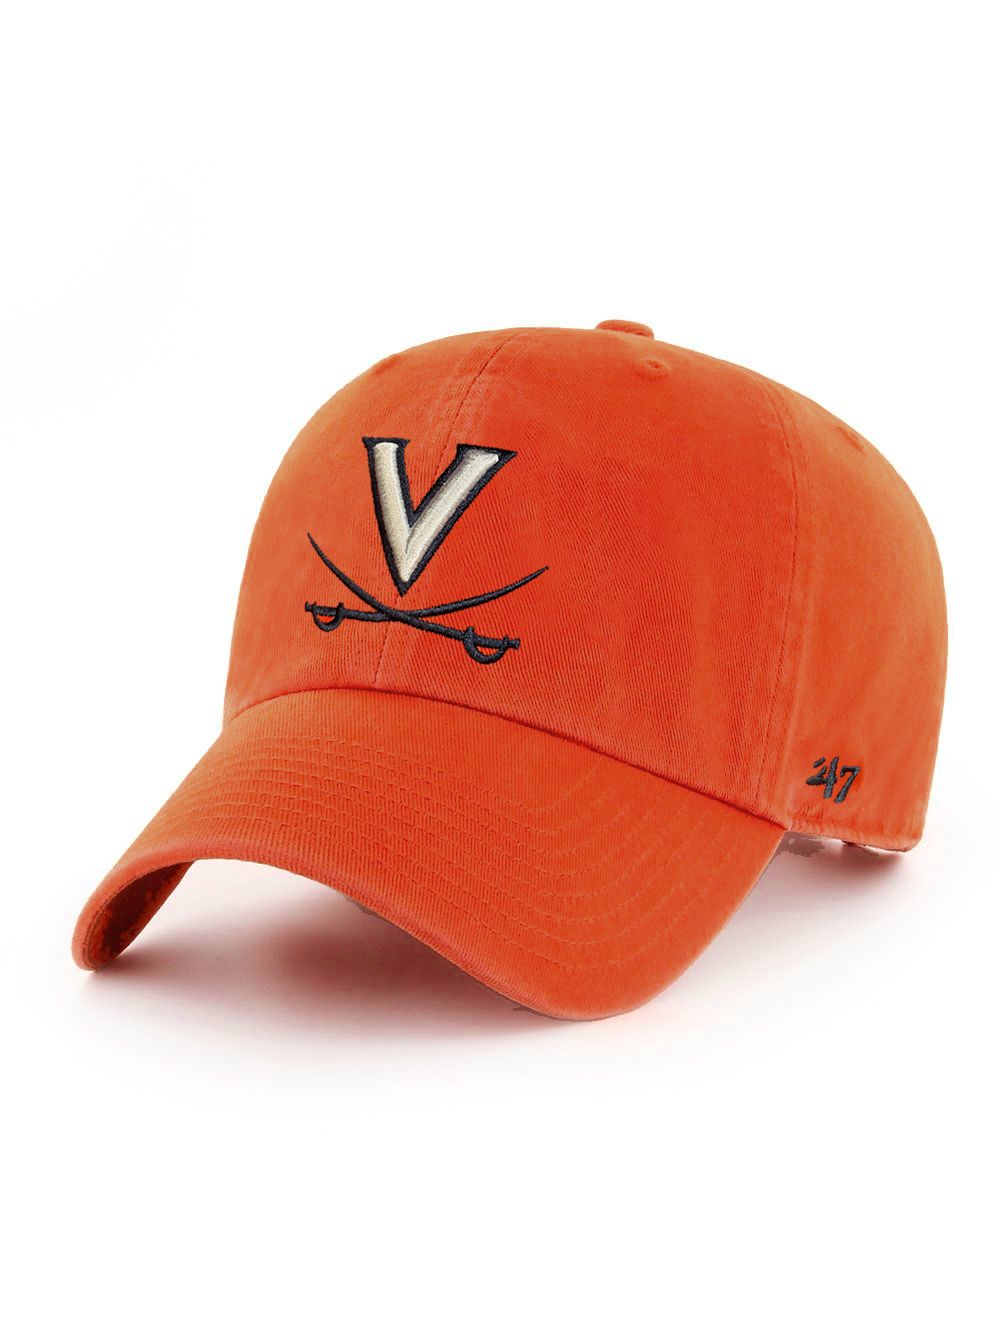 47 Brand Orange V and Crossed Sabers Adjustable Hat - Mincer's of  Charlottesville